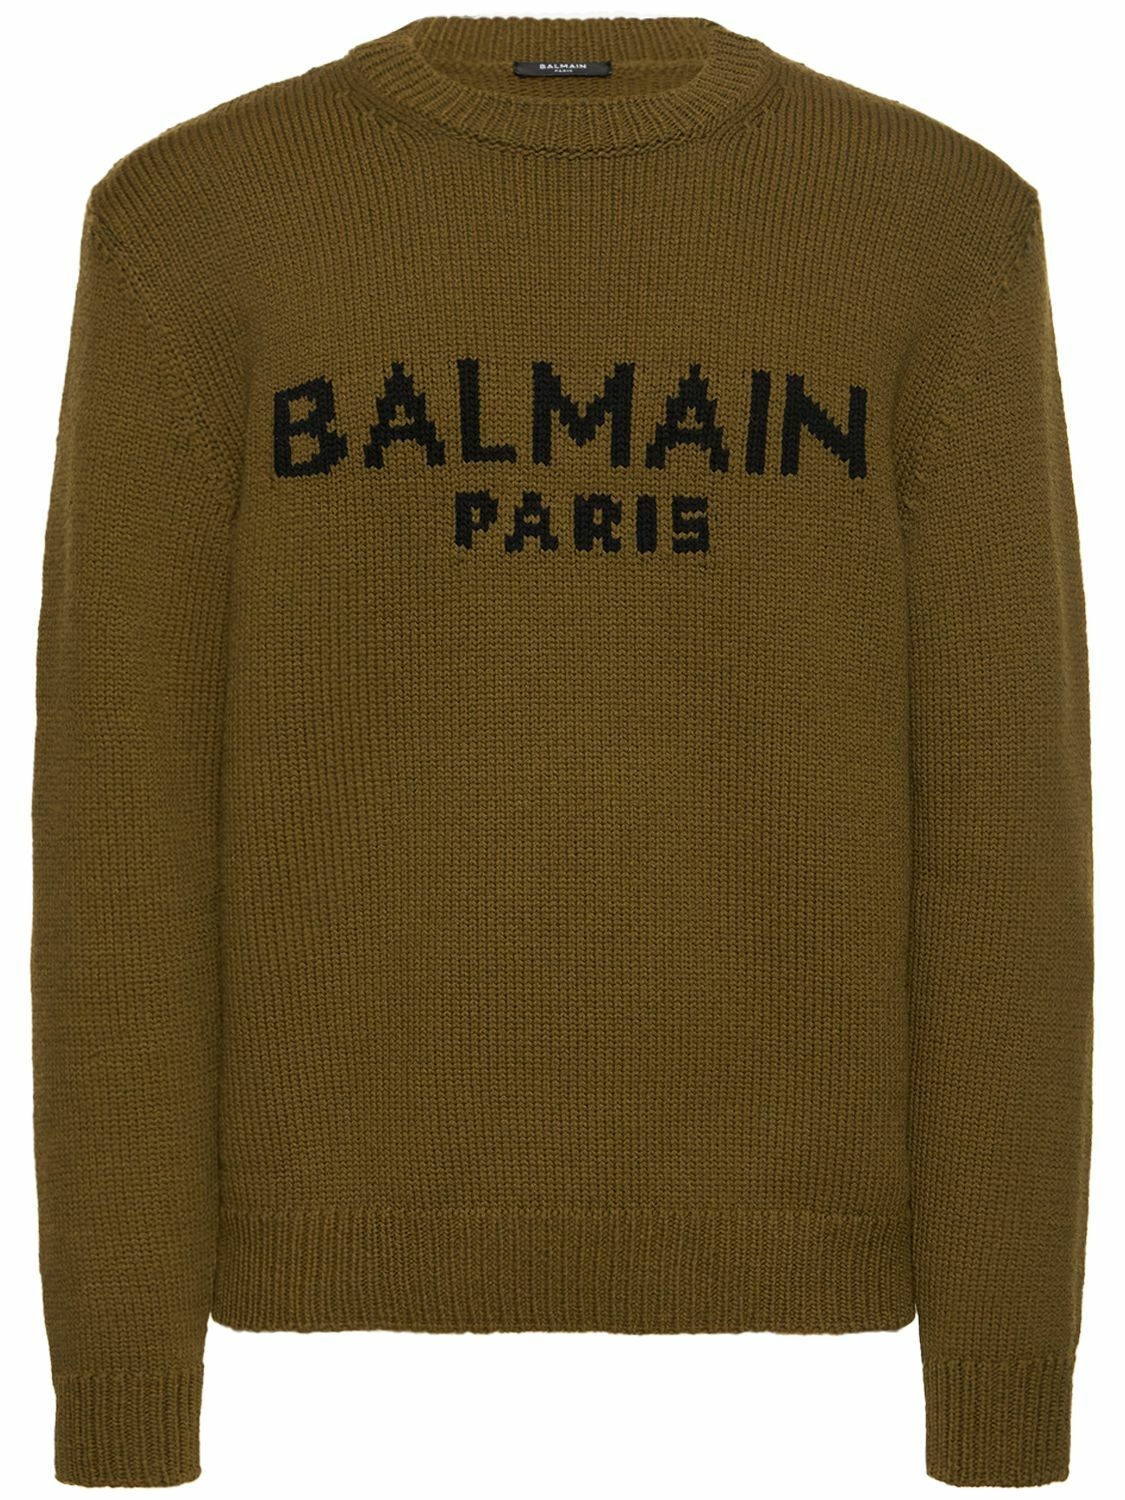 Photo: BALMAIN - Logo Crewneck Sweater